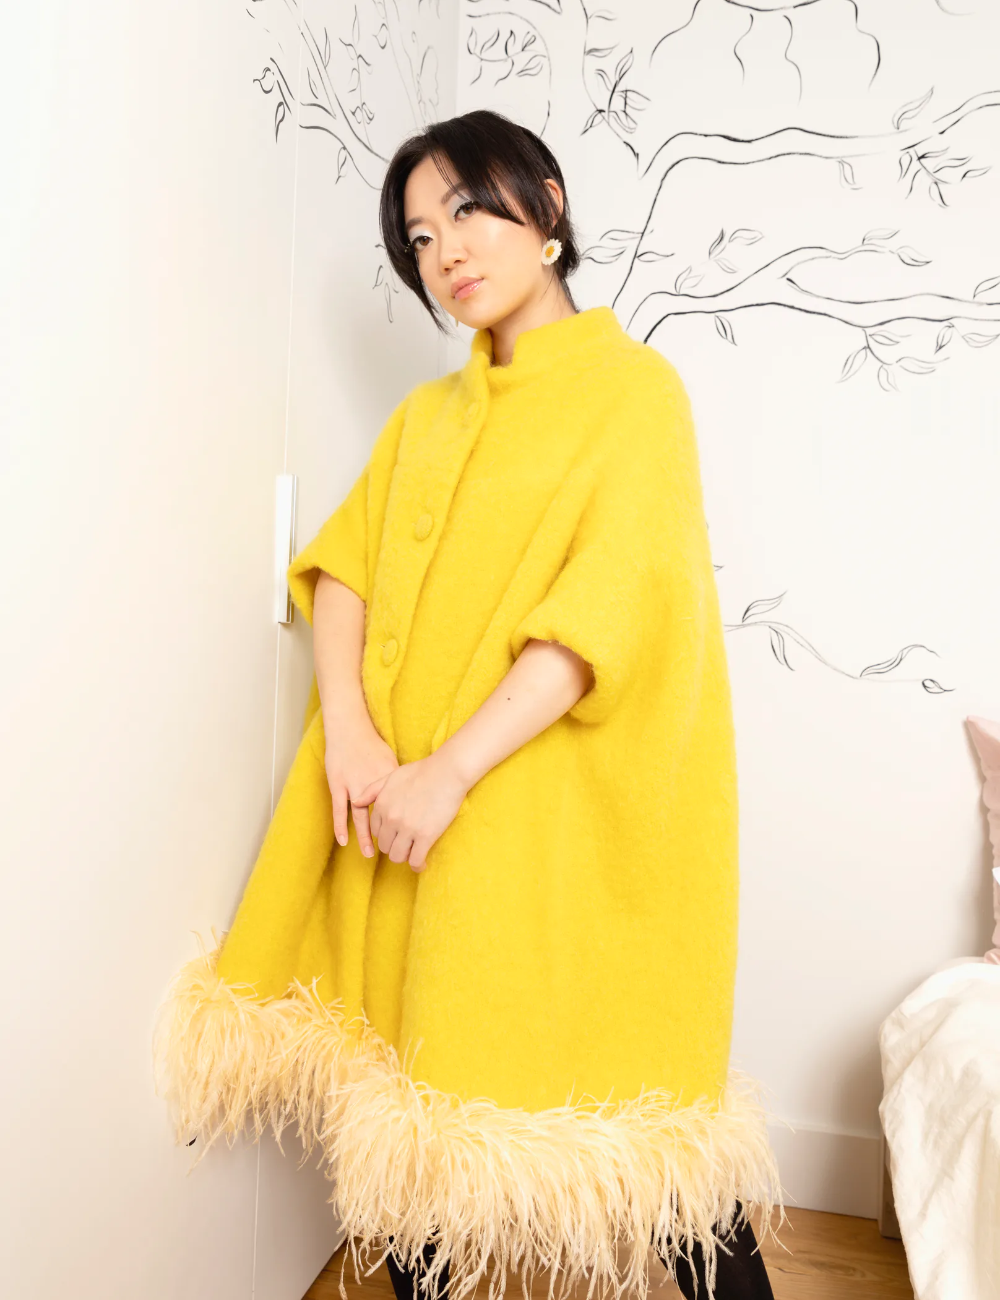 Nhà thiết kế thời trang người Mỹ gốc Á Olivia Cheng - Ảnh: W Magazine